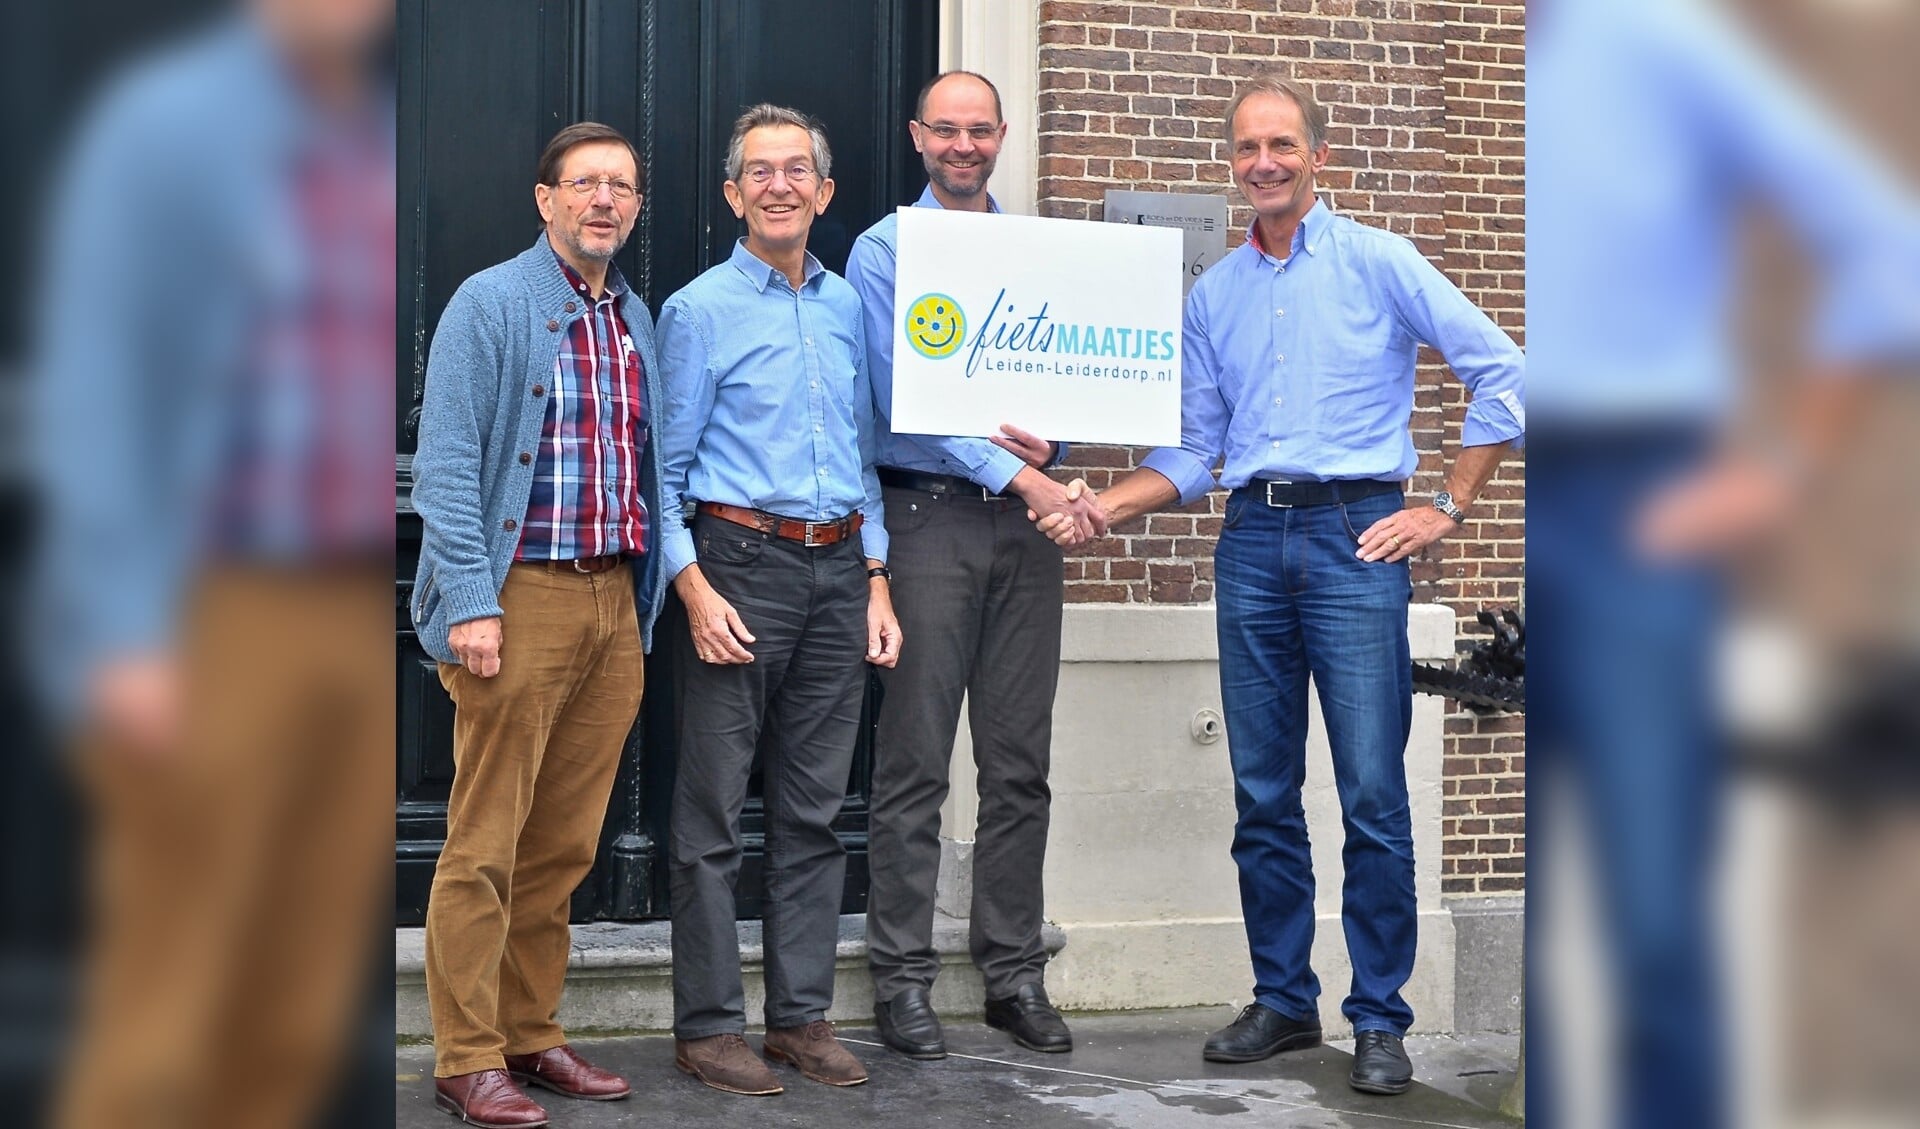 Bestuur van de Stichting Fietsmaatjes Leiden-Leiderdorp met de notaris Staand v.l.n.r. Wim Schellekens, Willem van Schie, notaris Michael de Vries en Ben Crul | Foto: PR